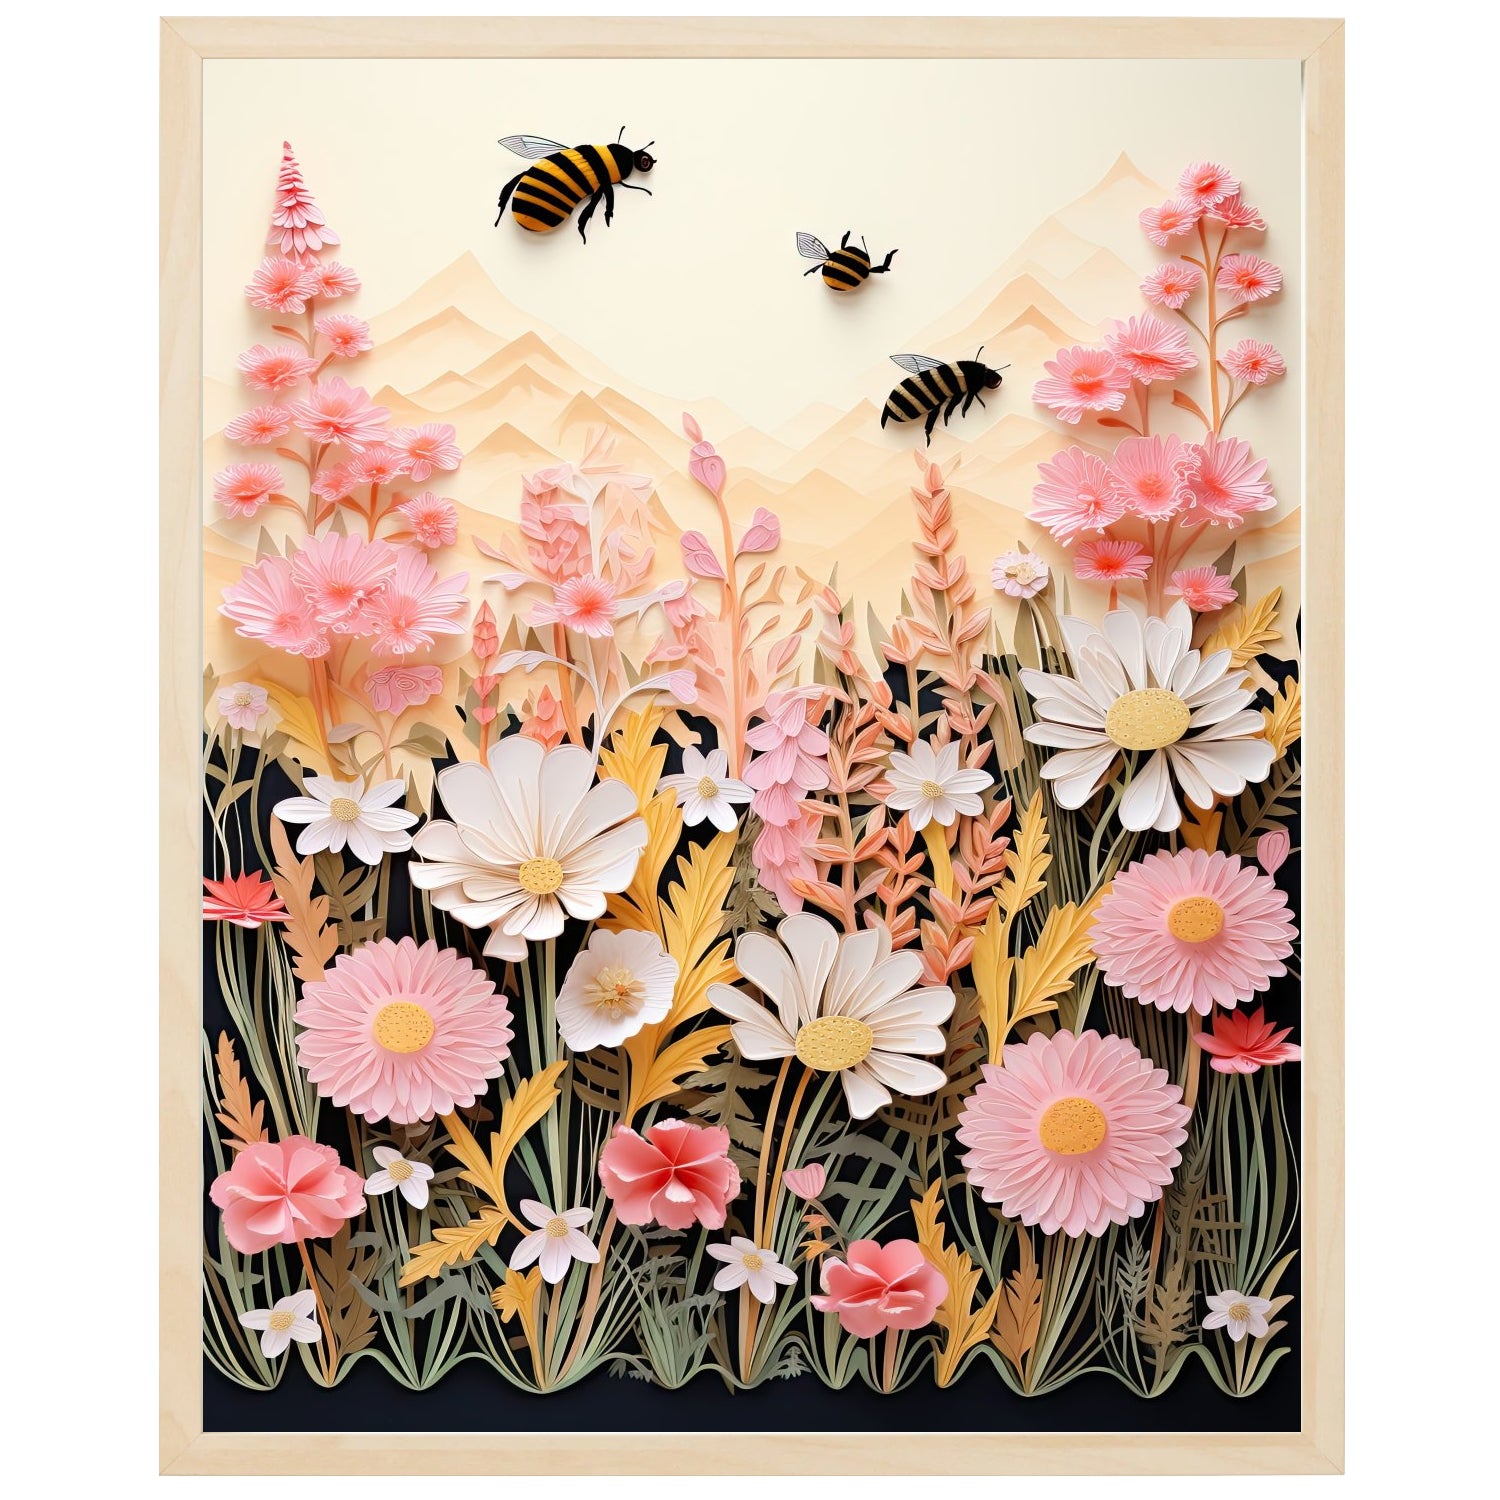 Billede af bier, der bestøver blomster på en åben mark, hvor der dyrkes afgrøder.